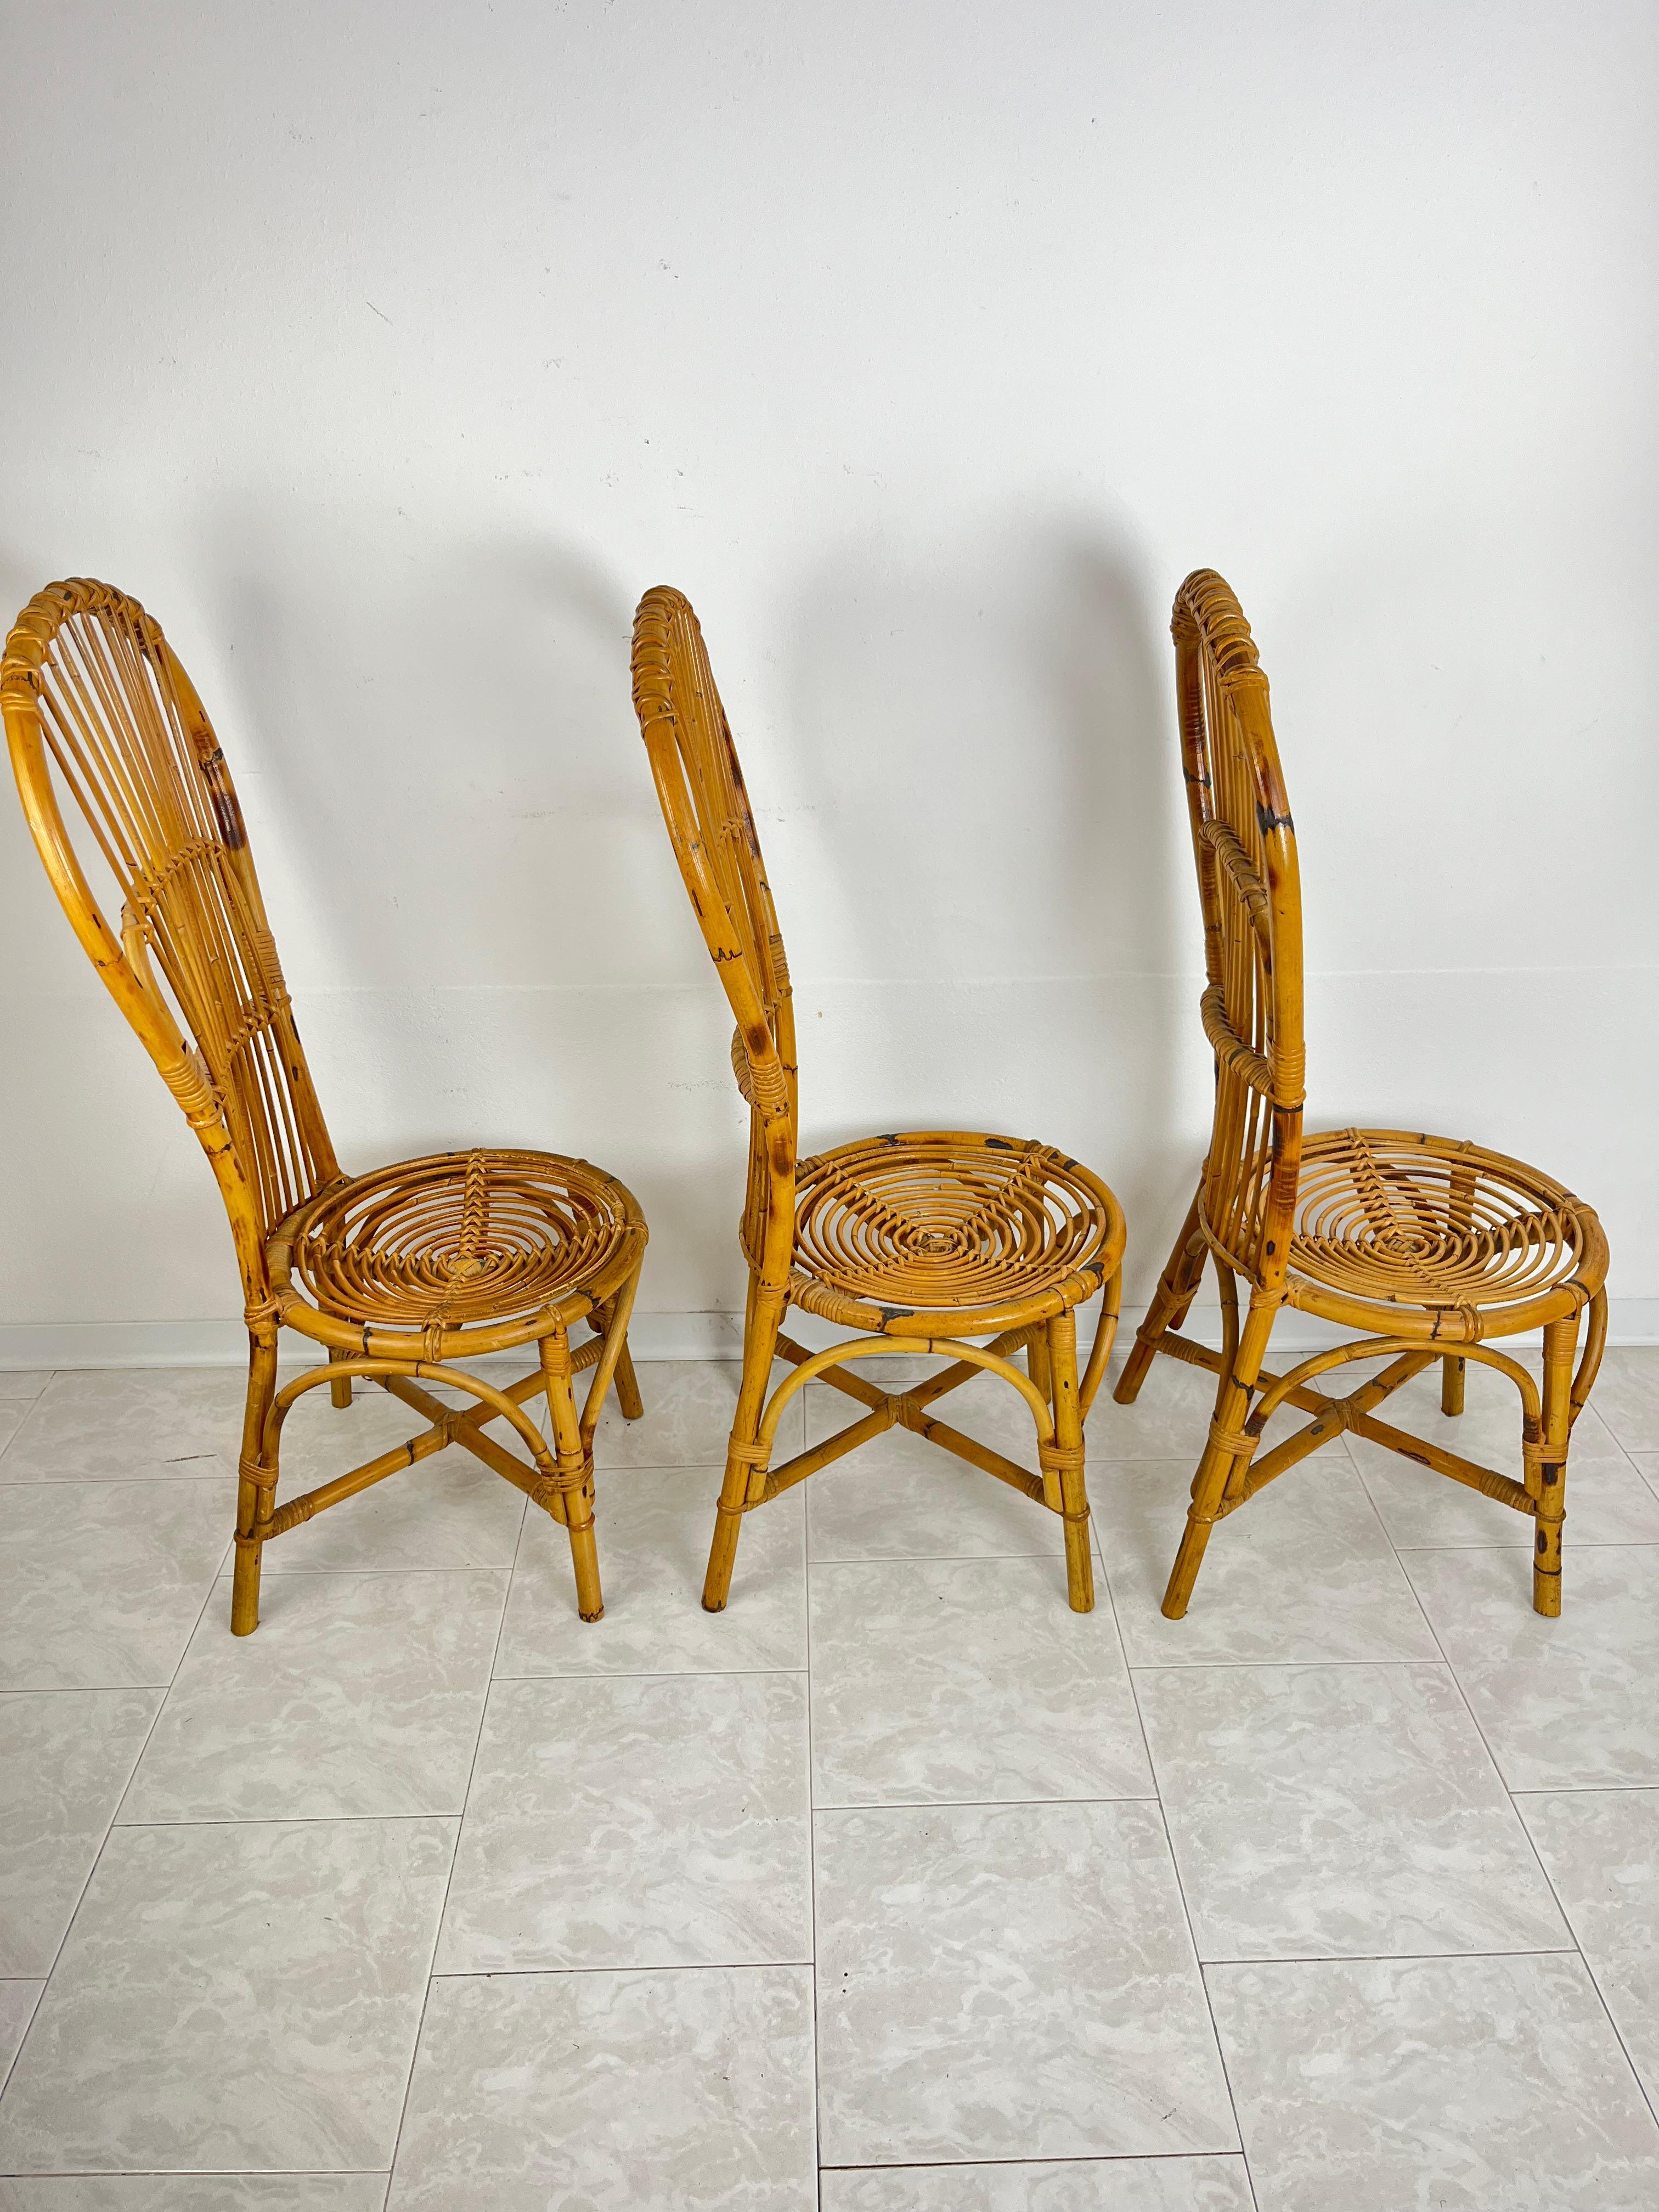 3 Stühle aus Bambus und Rattan aus der Mitte des Jahrhunderts mit Fächerrücken Italienisches Design  1950s
Intakt und in gutem Zustand, geringe Alterungsspuren.